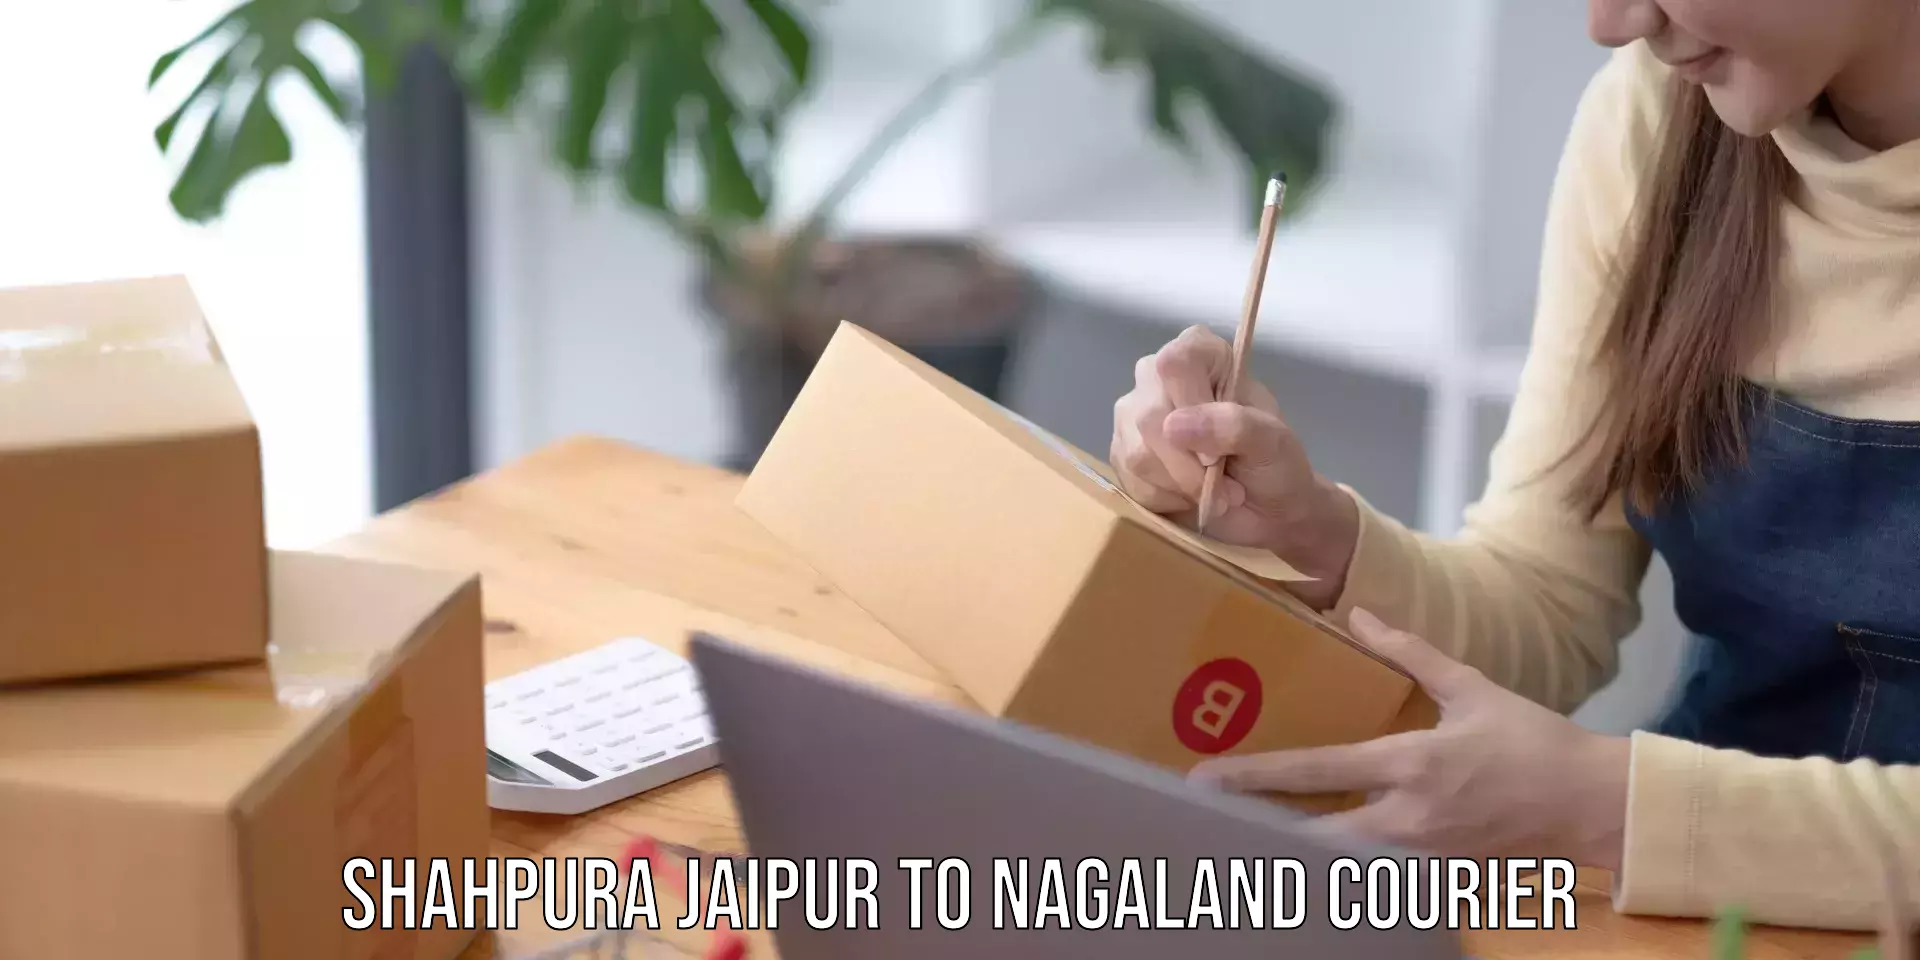 International parcel service Shahpura Jaipur to Nagaland